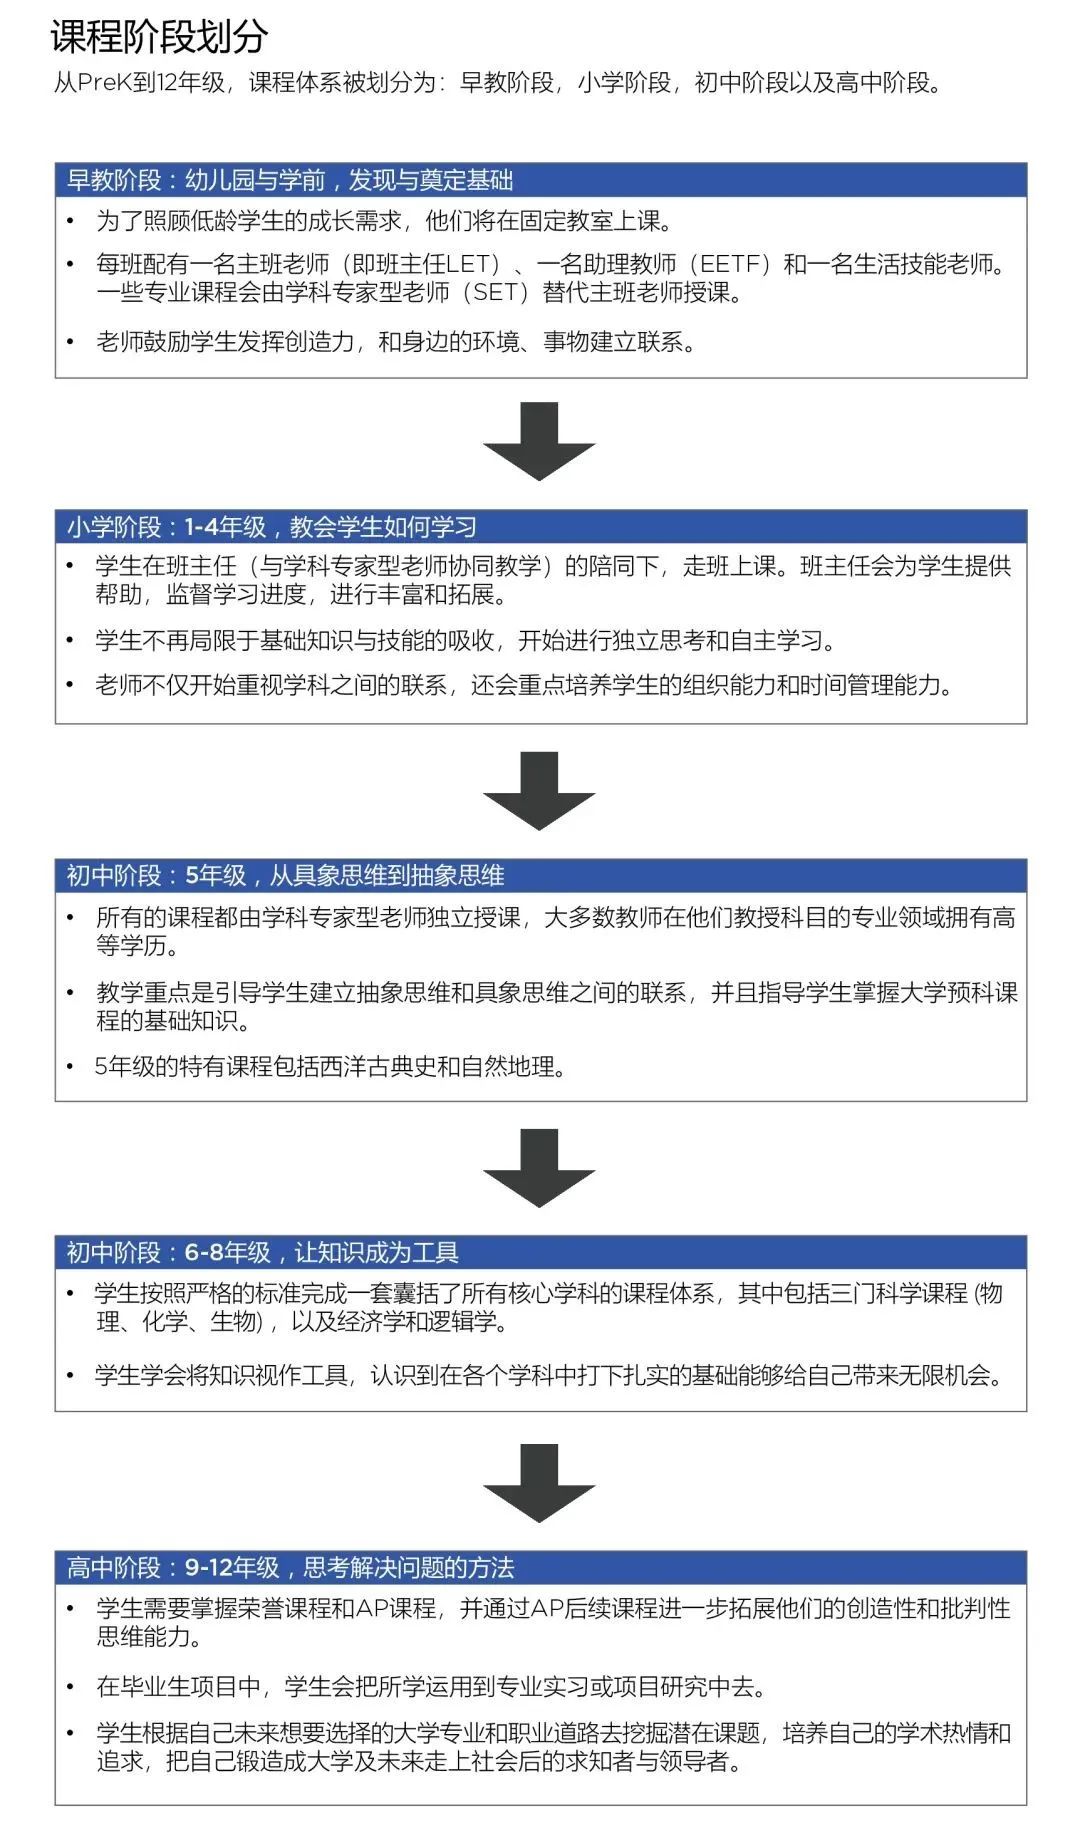 重要通知！广州贝赛思入学测试将于2月26日举行，招收PK1-G9新生，现已开放报名！